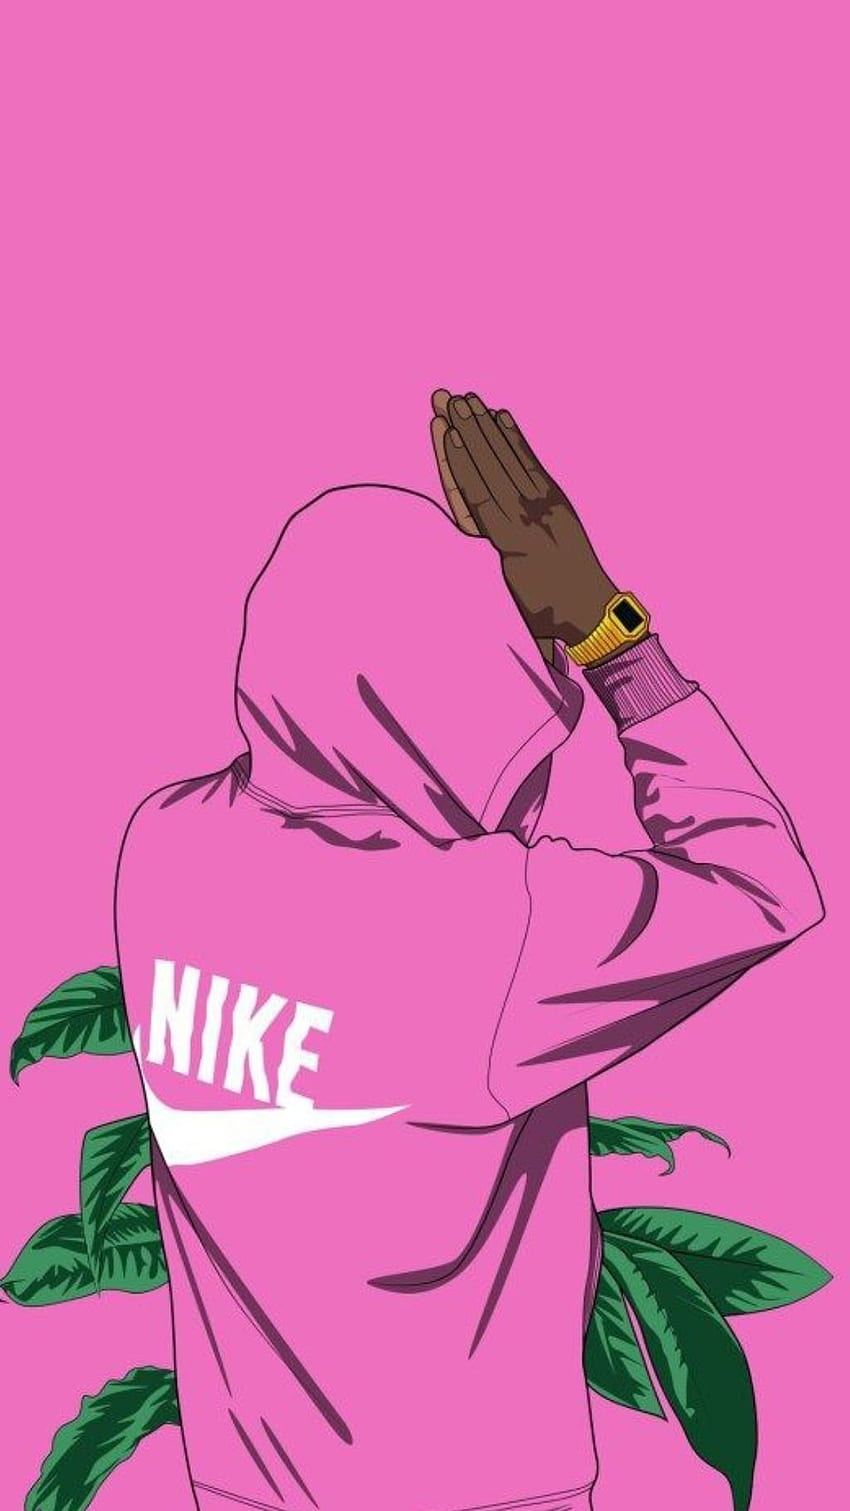 Nike đã tung ra bộ sưu tập hình nền điện thoại mới với tông màu hồng đầy nữ tính, được thiết kế đơn giản nhưng đầy ấn tượng. Hãy làm mới màn hình điện thoại của bạn với những hình ảnh độc đáo này.